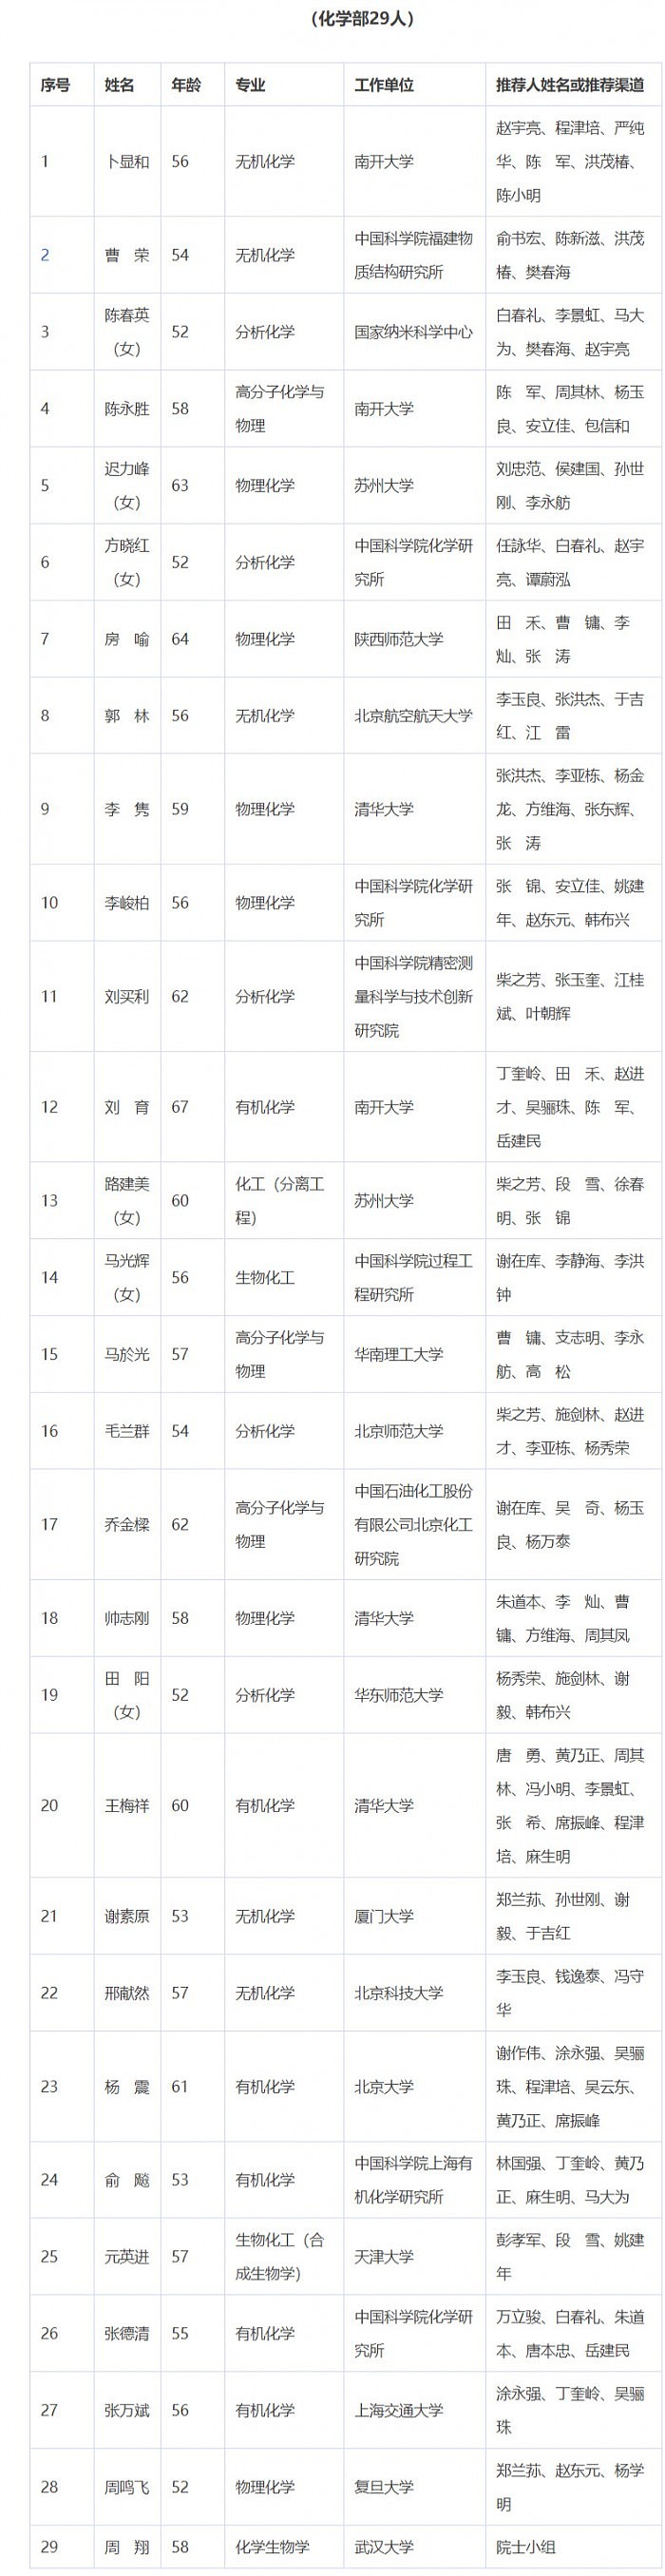 2021年中国科学院院士增选初步候选人名单公布 - 5